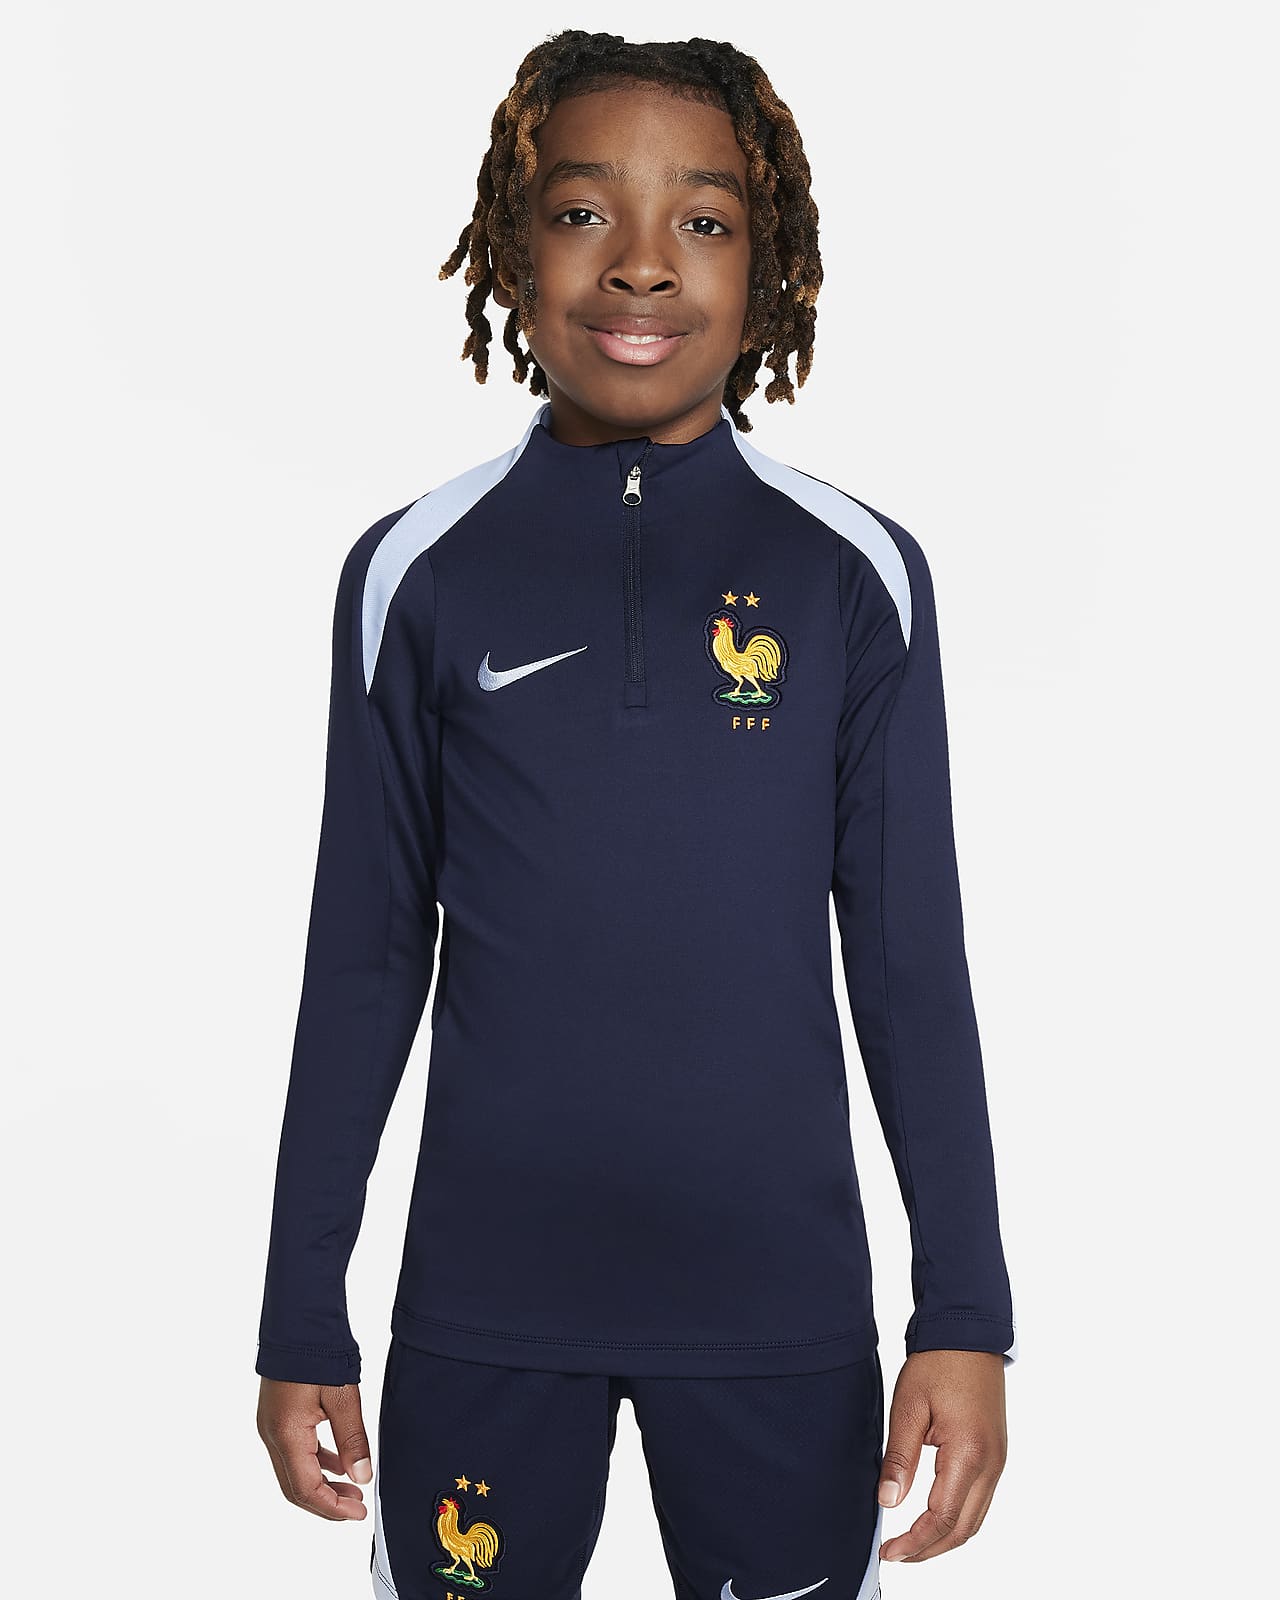 Ποδοσφαιρική μπλούζα προπόνησης Nike Dri-FIT Γαλλική Ομοσπονδία Ποδοσφαίρου Strike για μεγάλα παιδιά